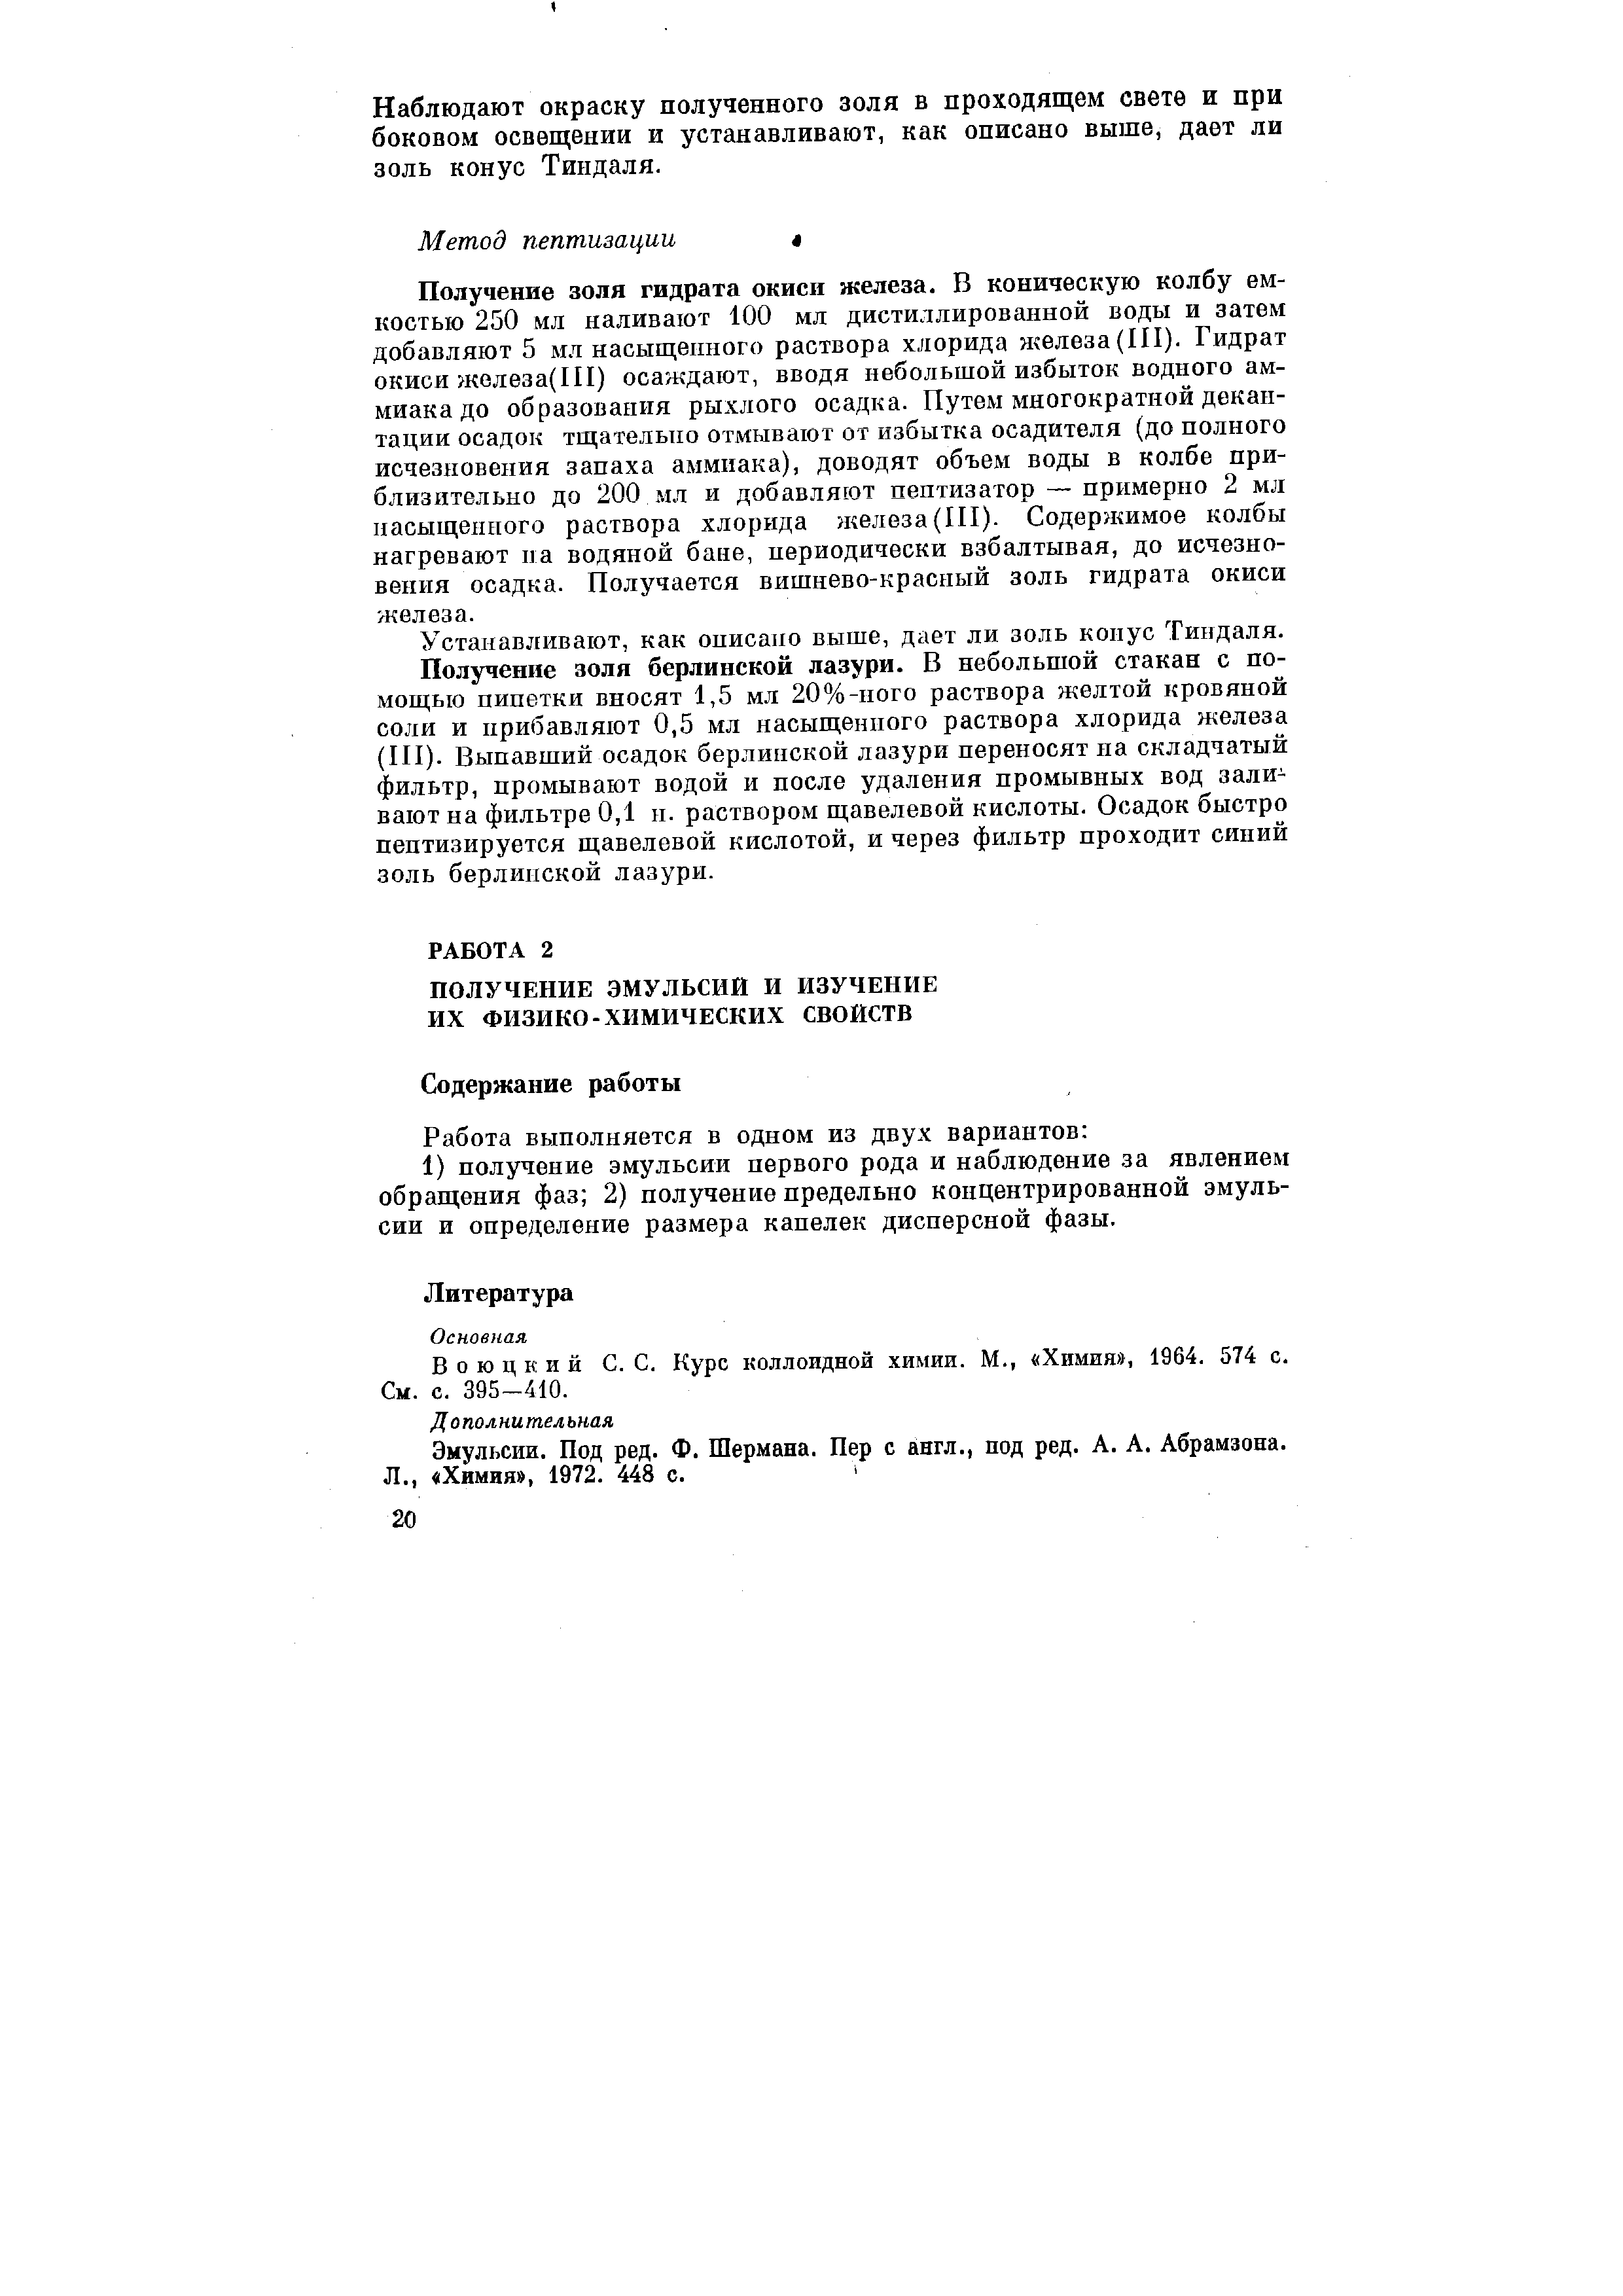 Воюцкий С. С. Курс коллоидной химии. М., Химия , 1964. 574 с. См. с. 395-410.